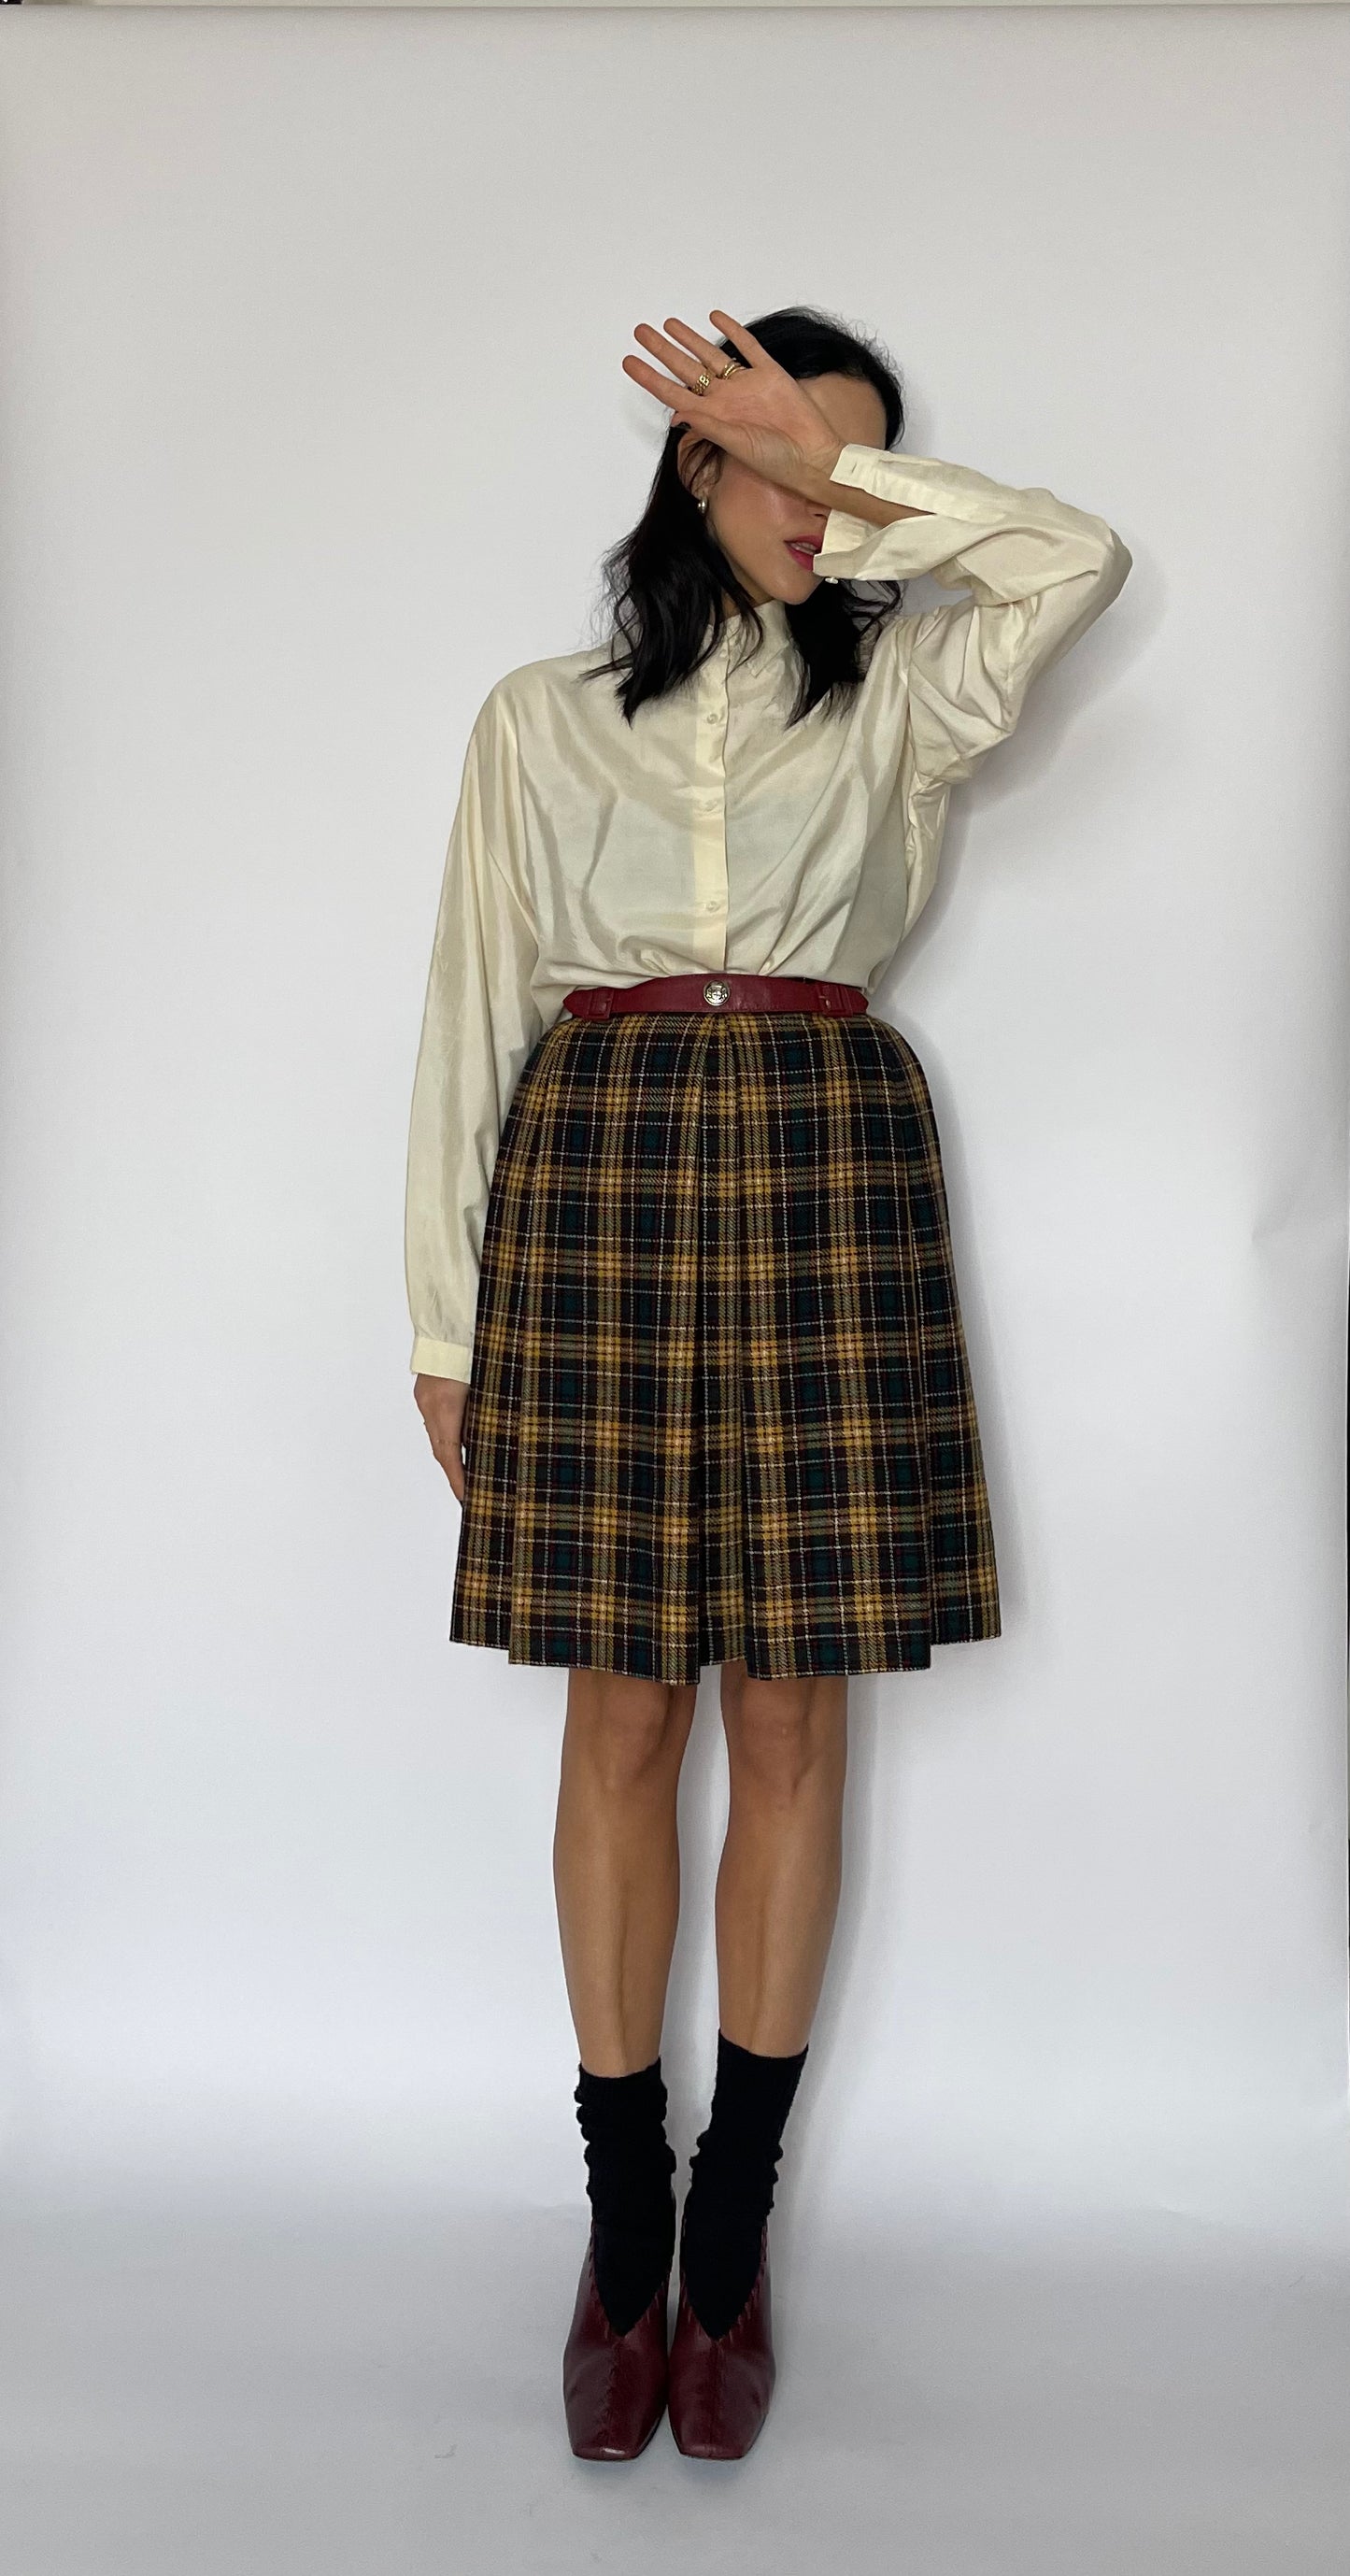 Cute tartan skirt